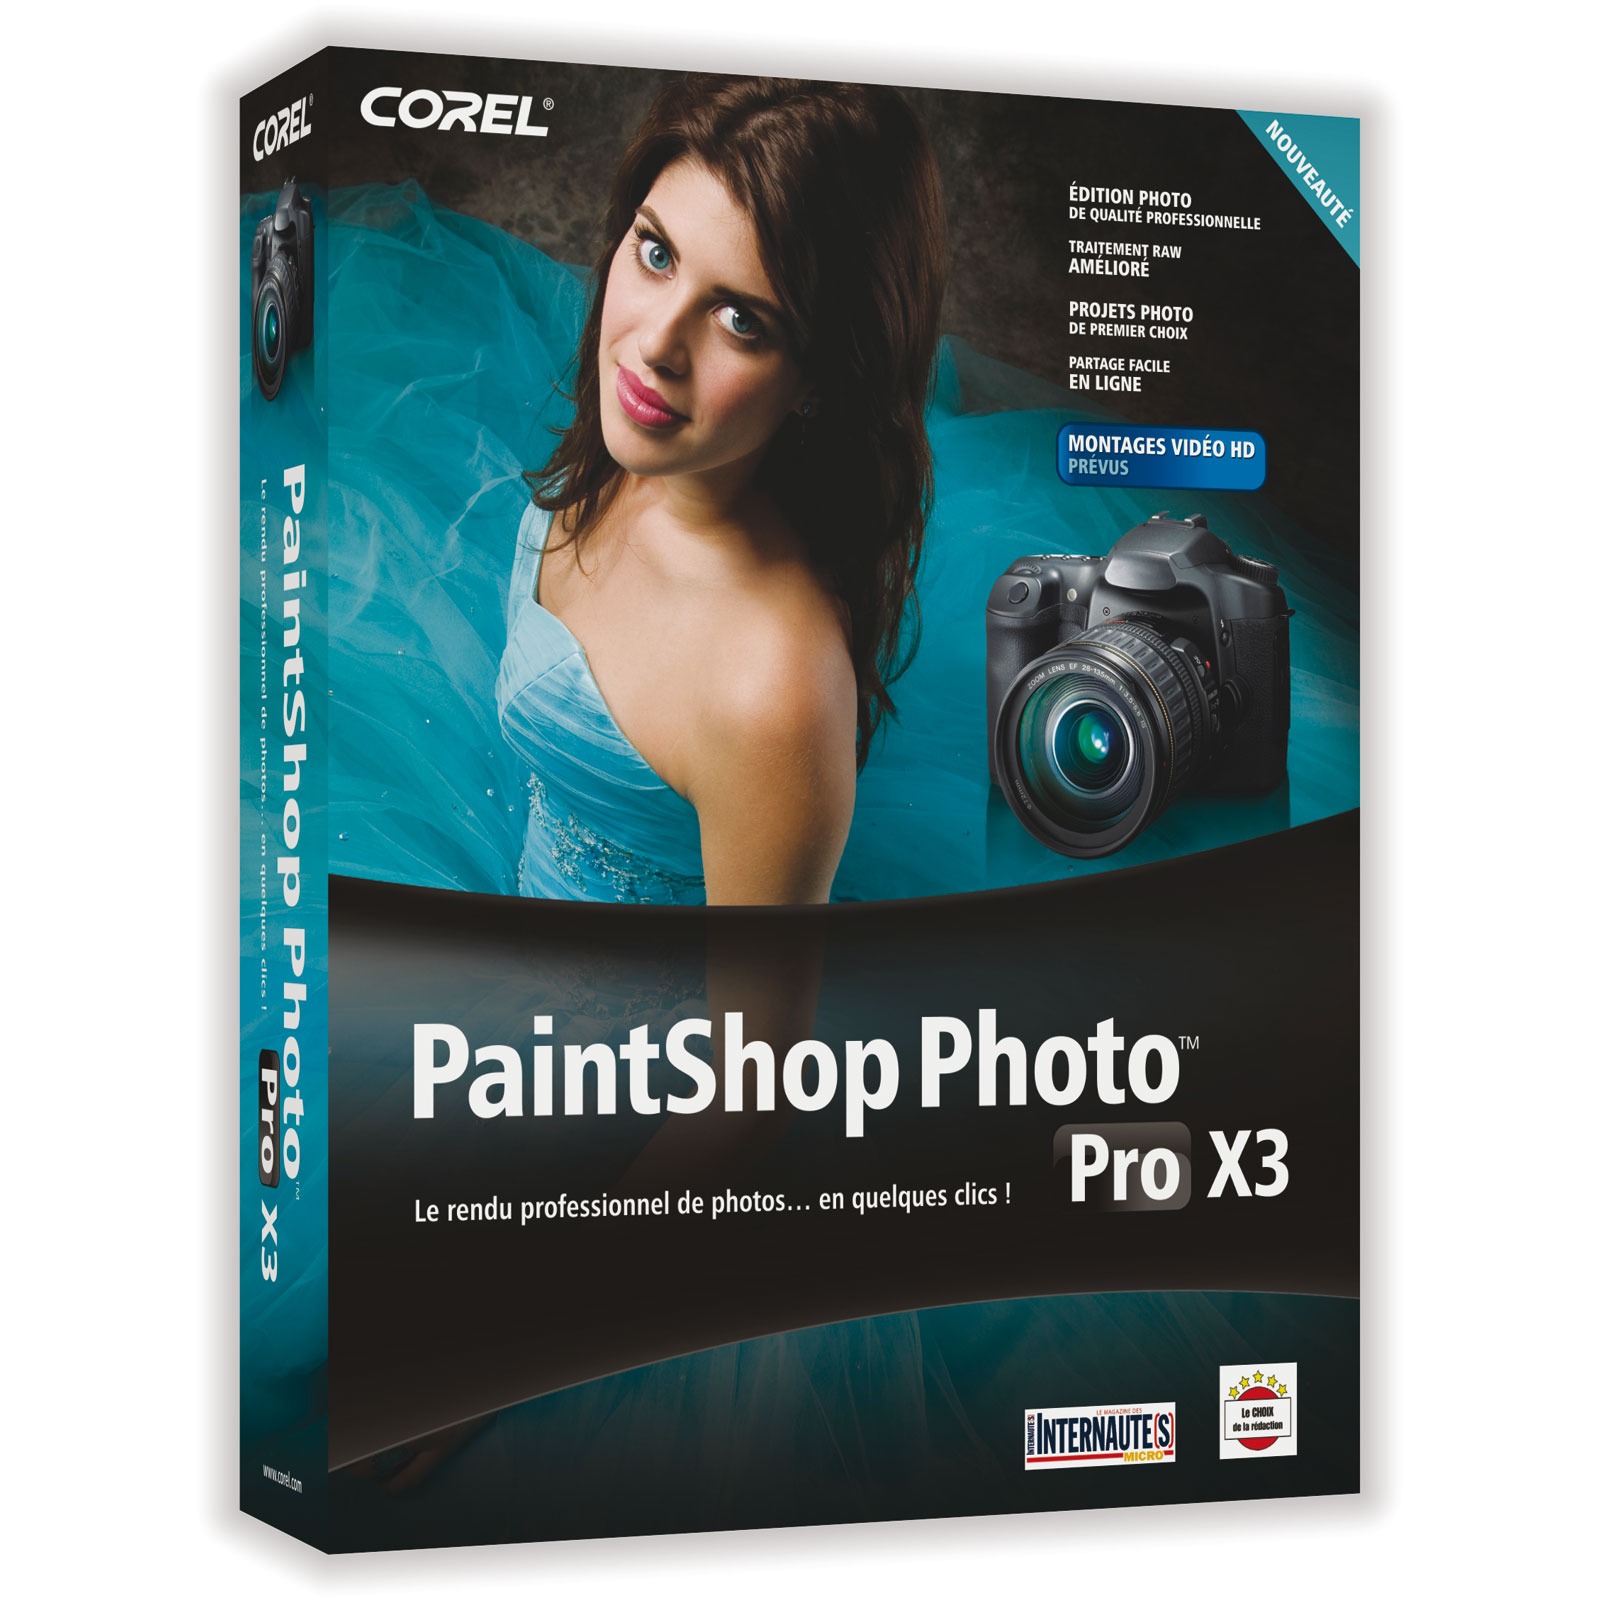 corel paintshop photo pro x3 free download for mac